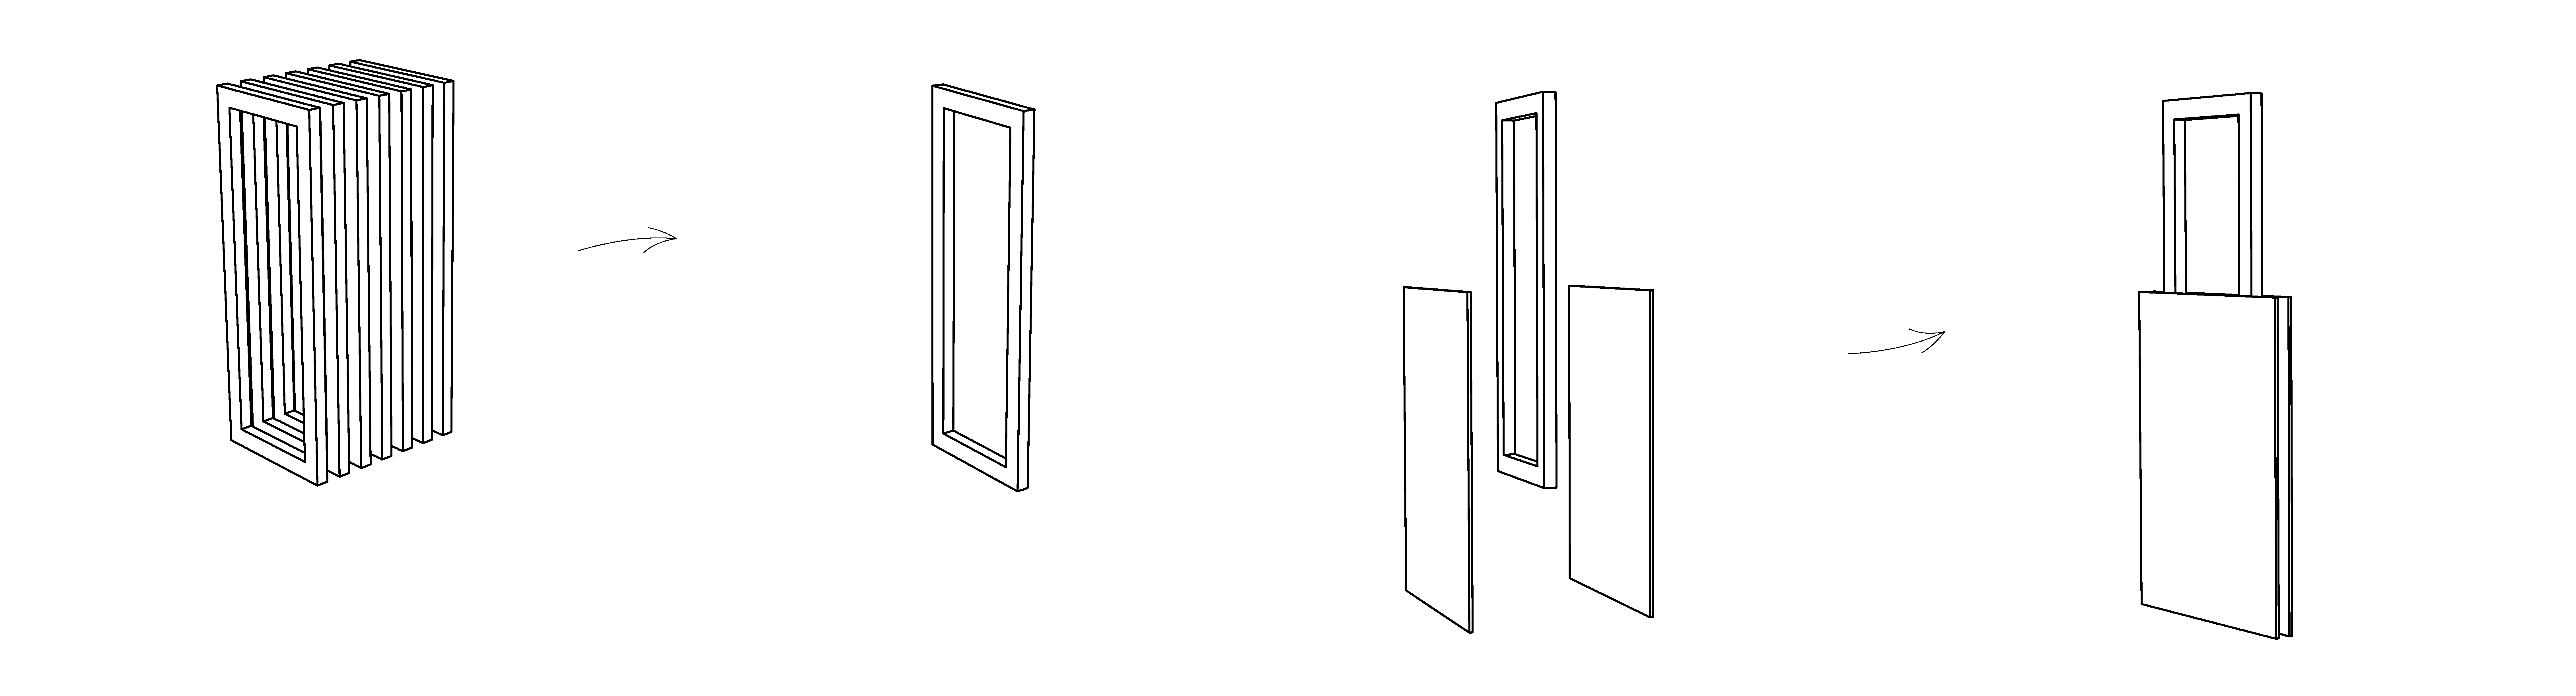 Drevený modulárny systém je v interiéri použitý ako nosič výstavných panelov